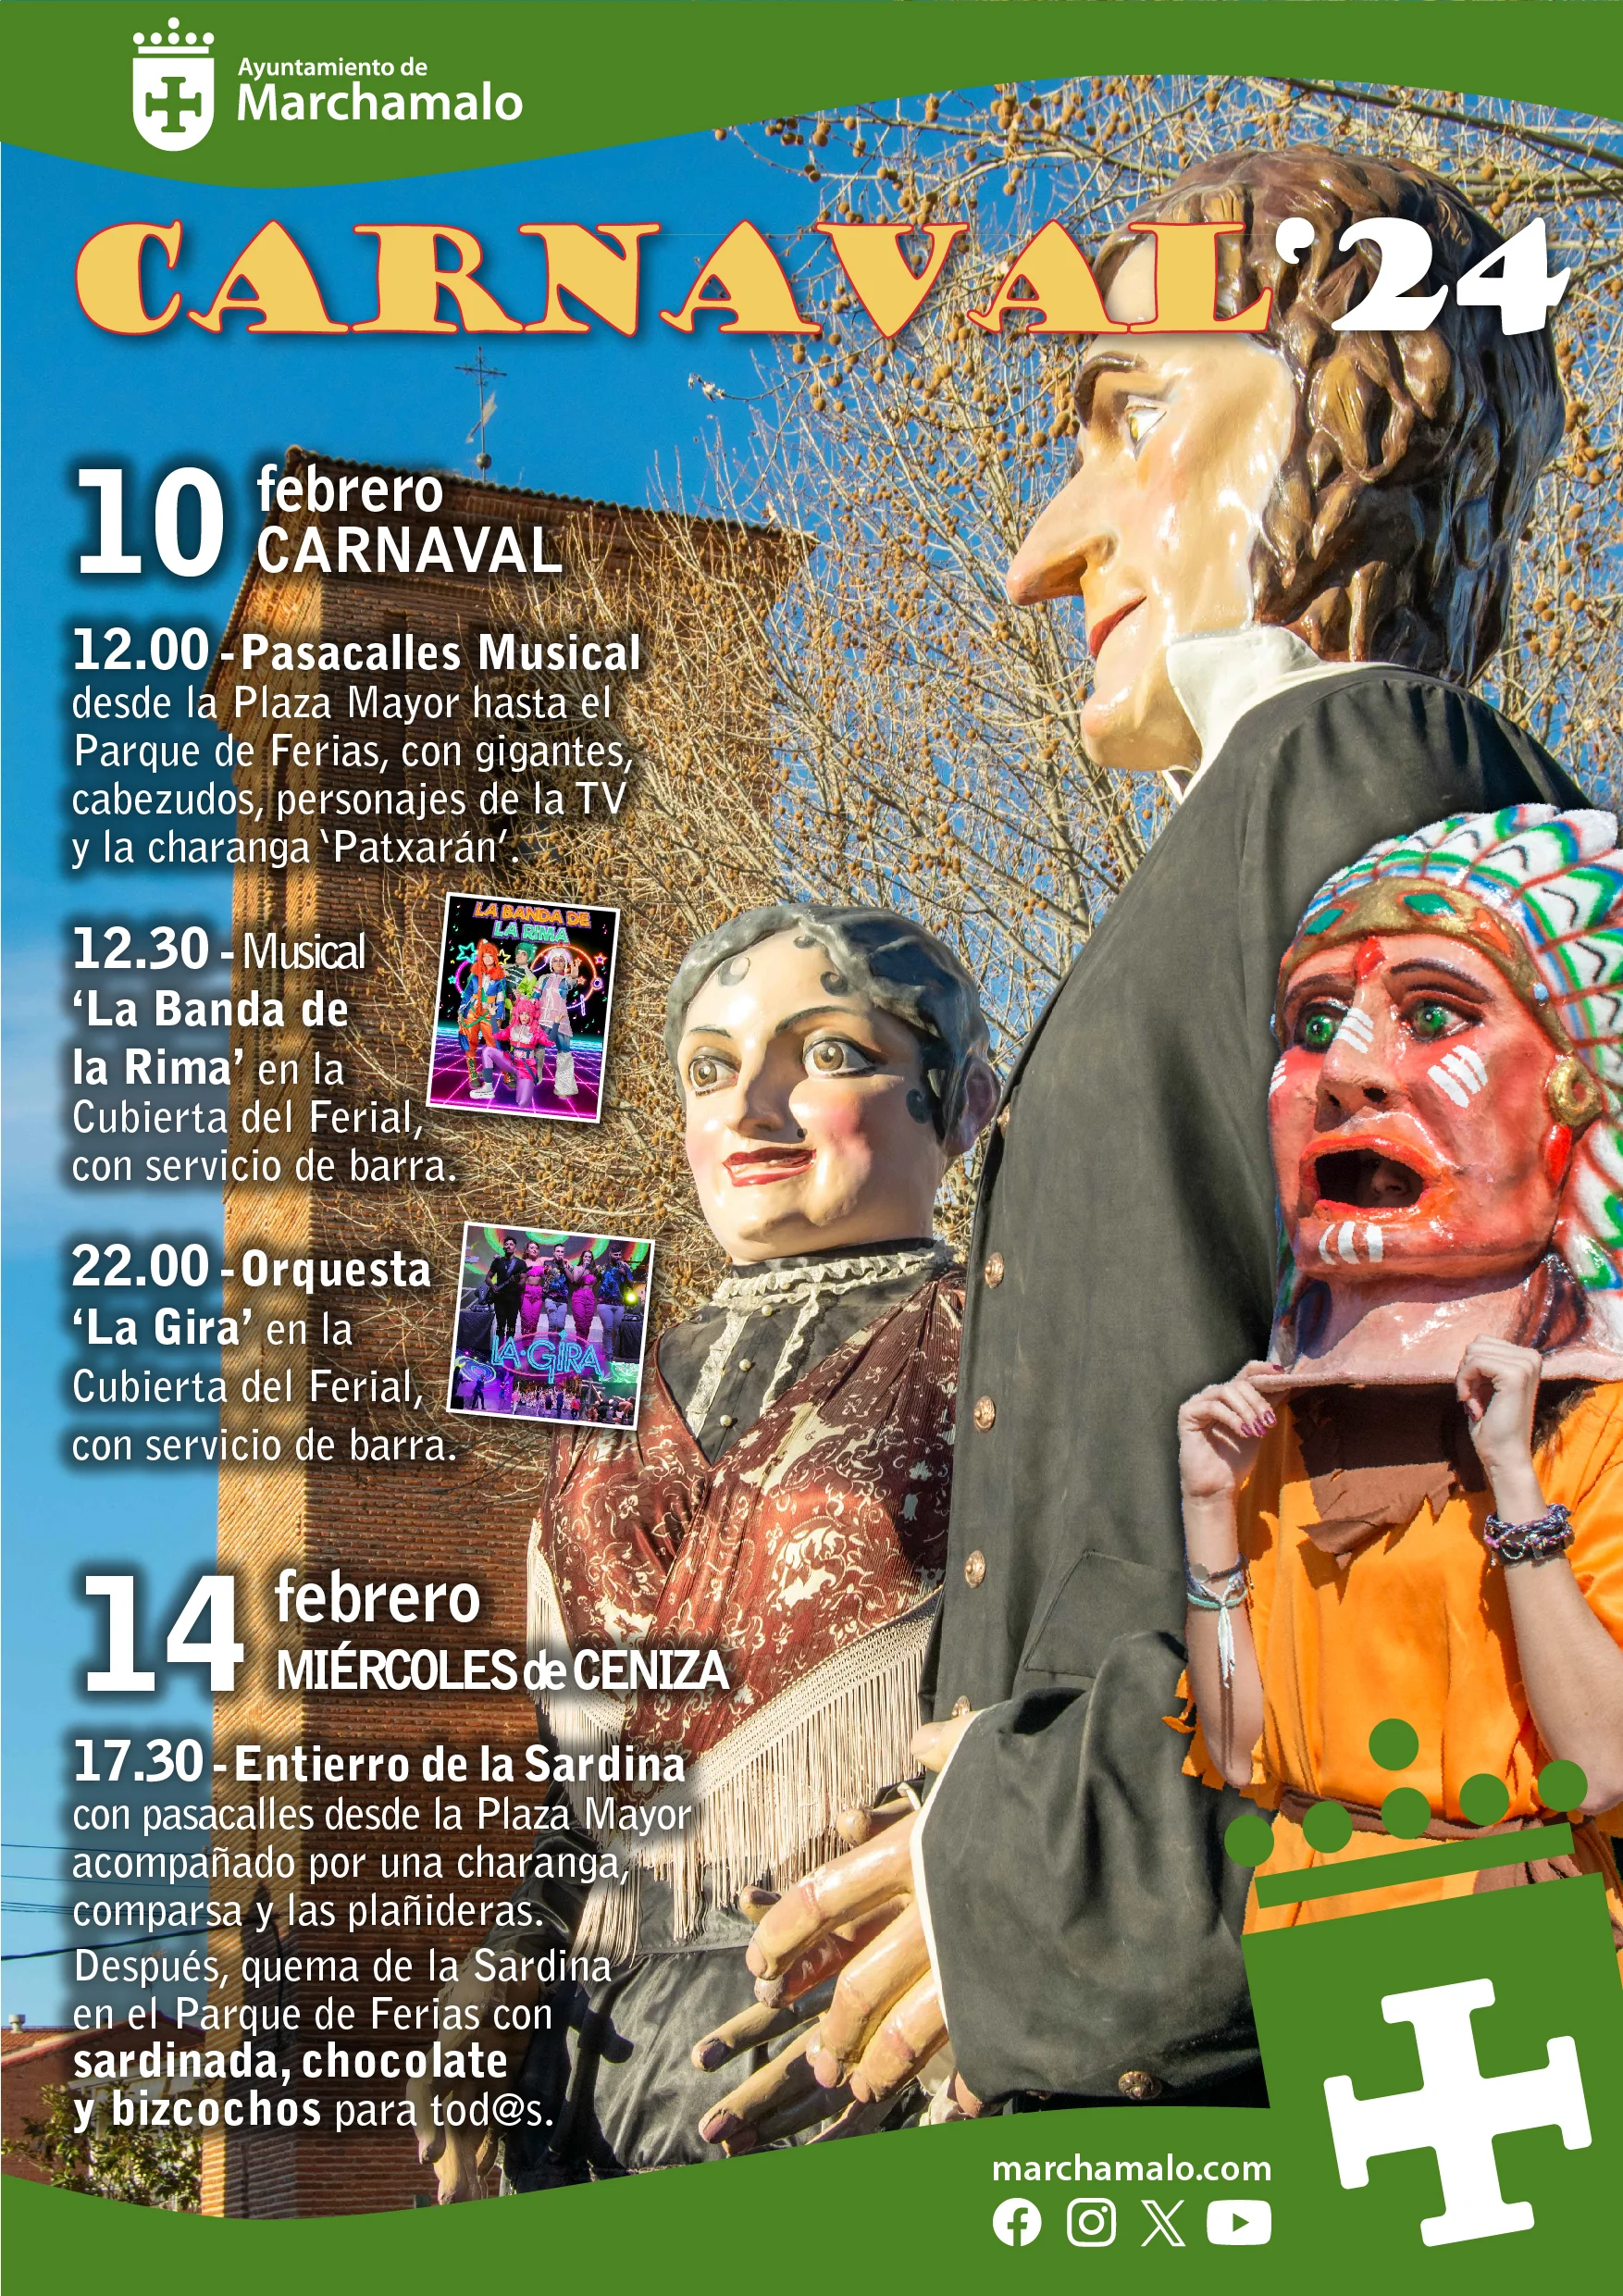 Carnaval Marchamalo 2024: ¡Nueva Dimensión Festiva con Fiesta Nocturna y Orquesta en la Cubierta del Ferial!